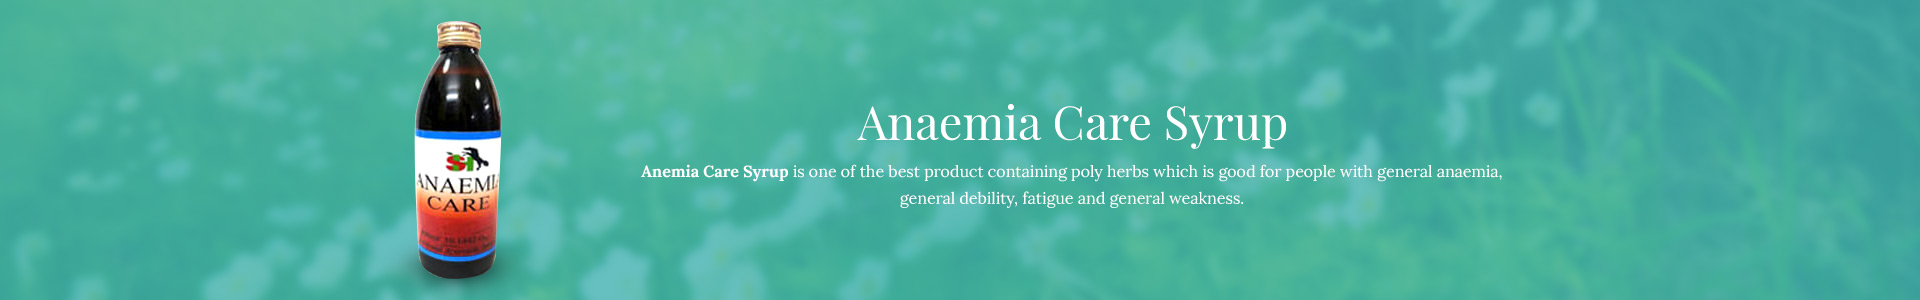 anemia-care